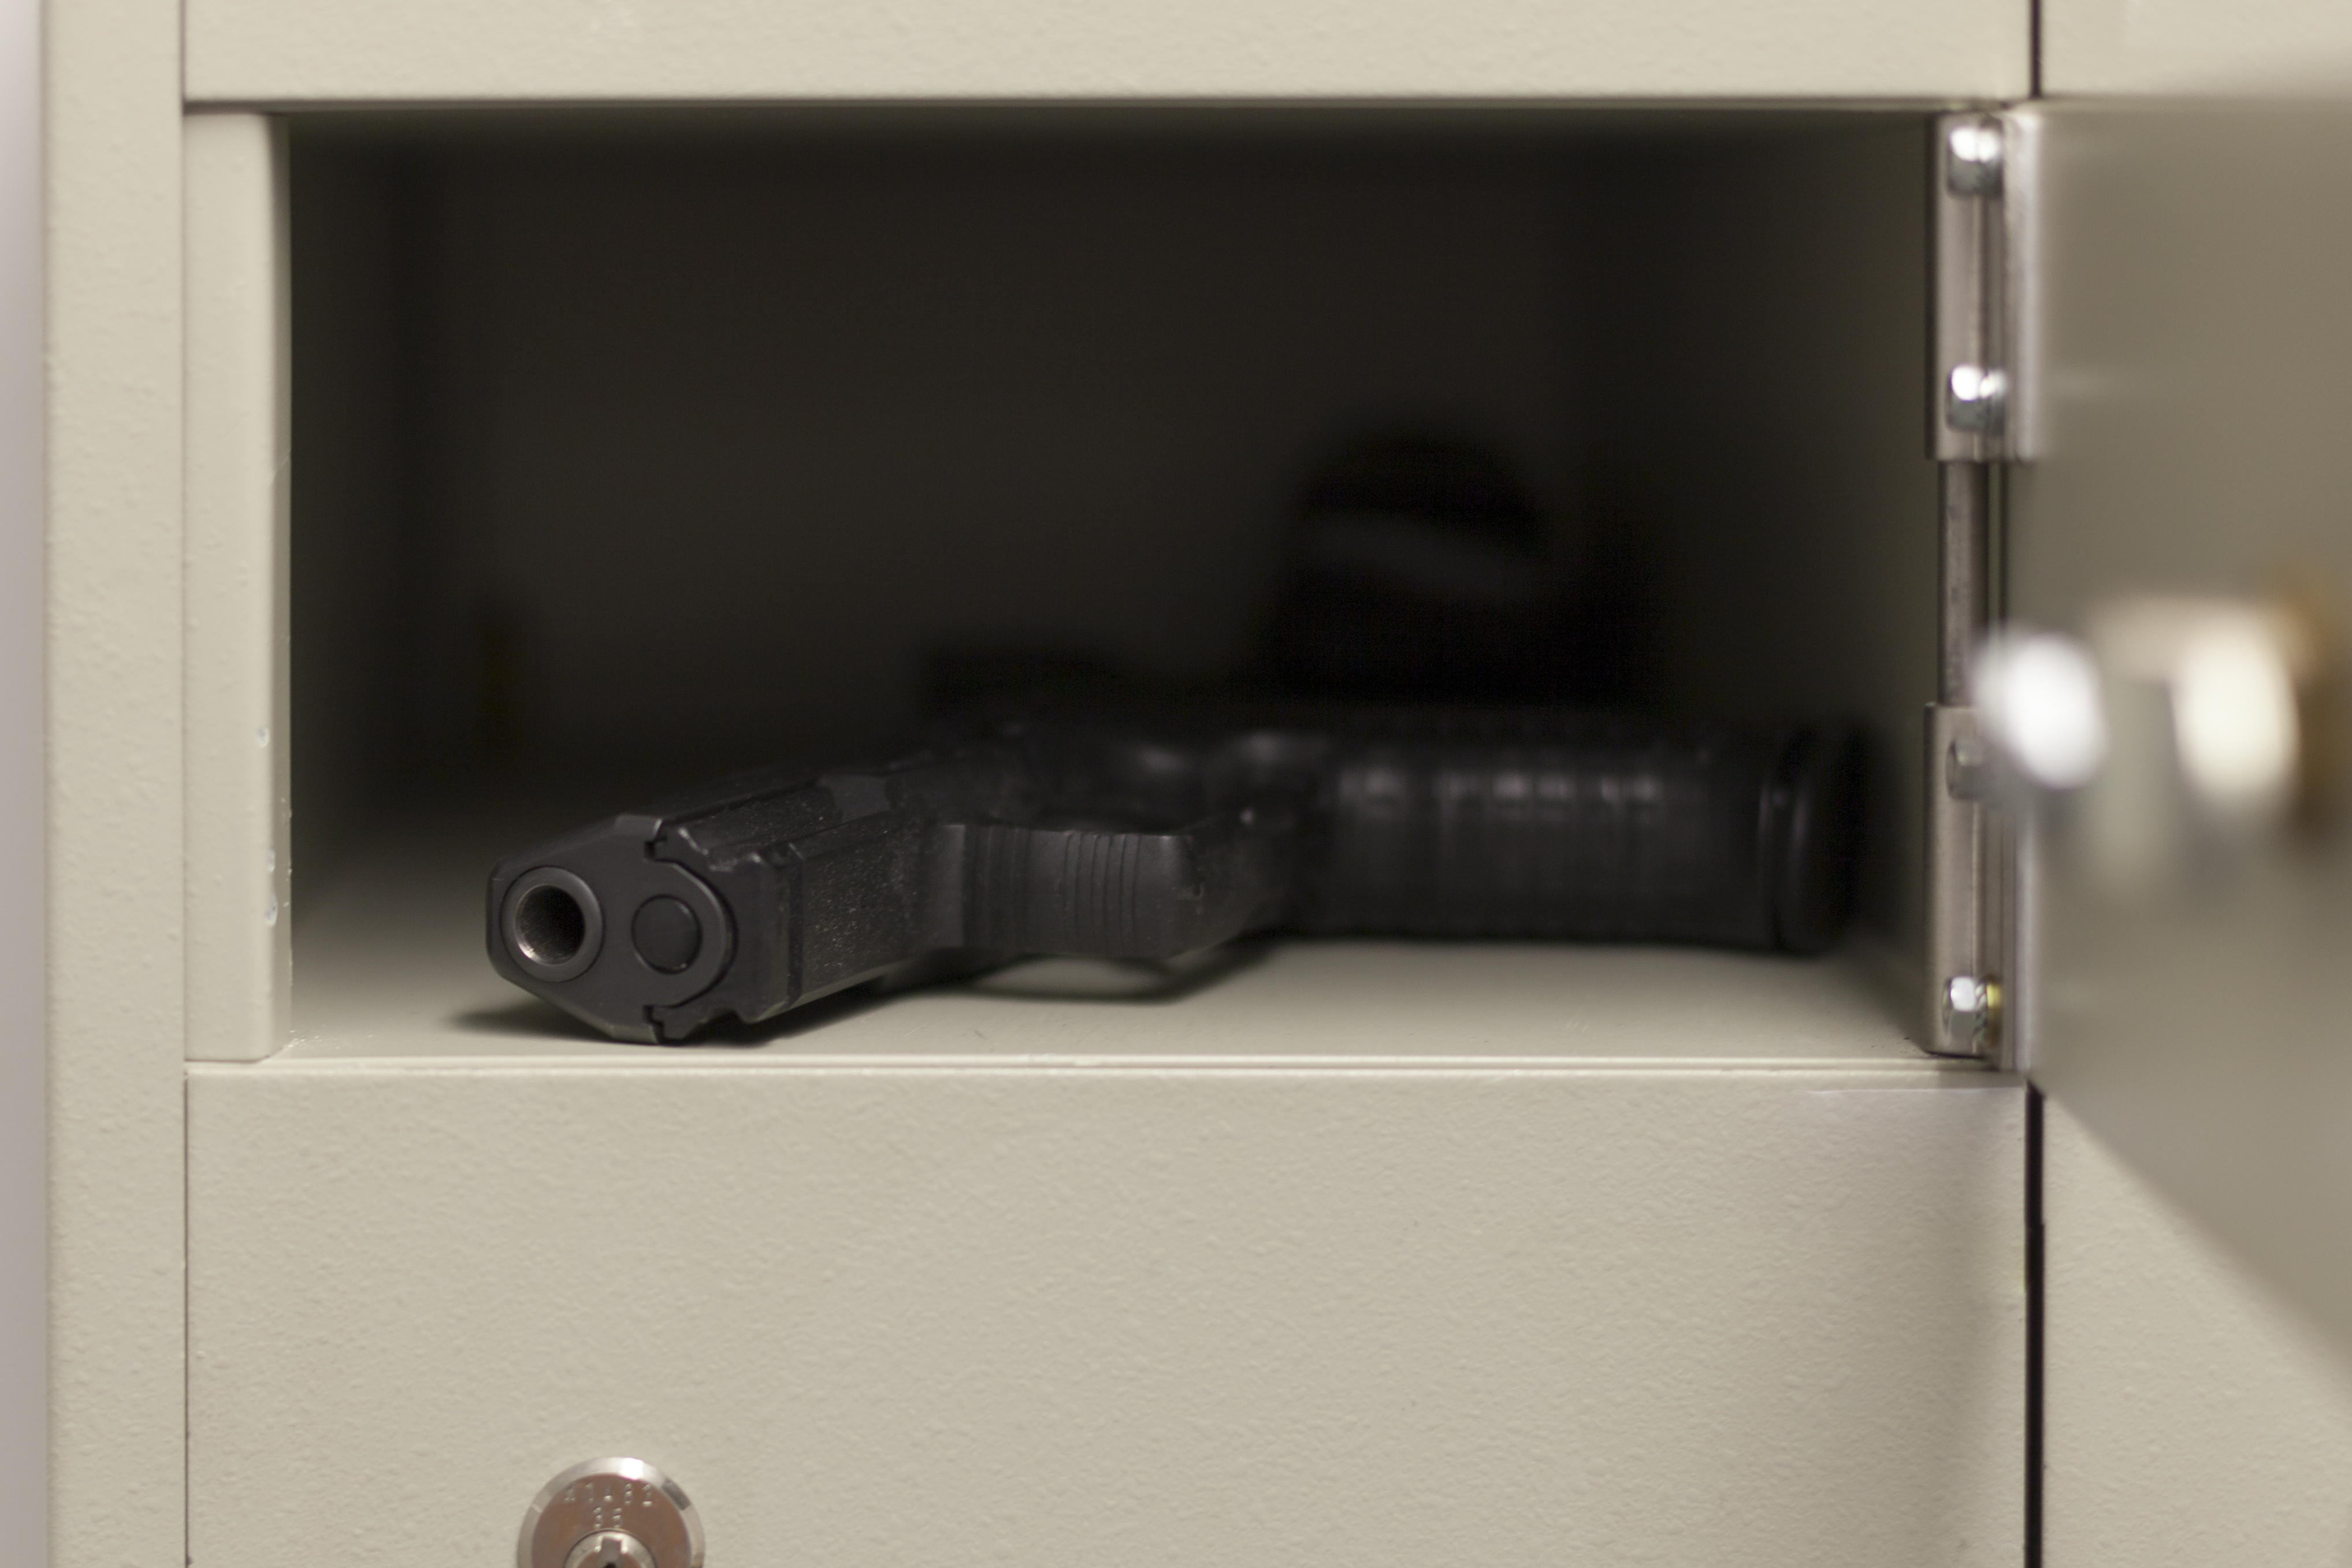 Details about   FIREARM STORAGE CABINET 18 Gun Security Rifle Shotgun Rack Steel Black Safe New 